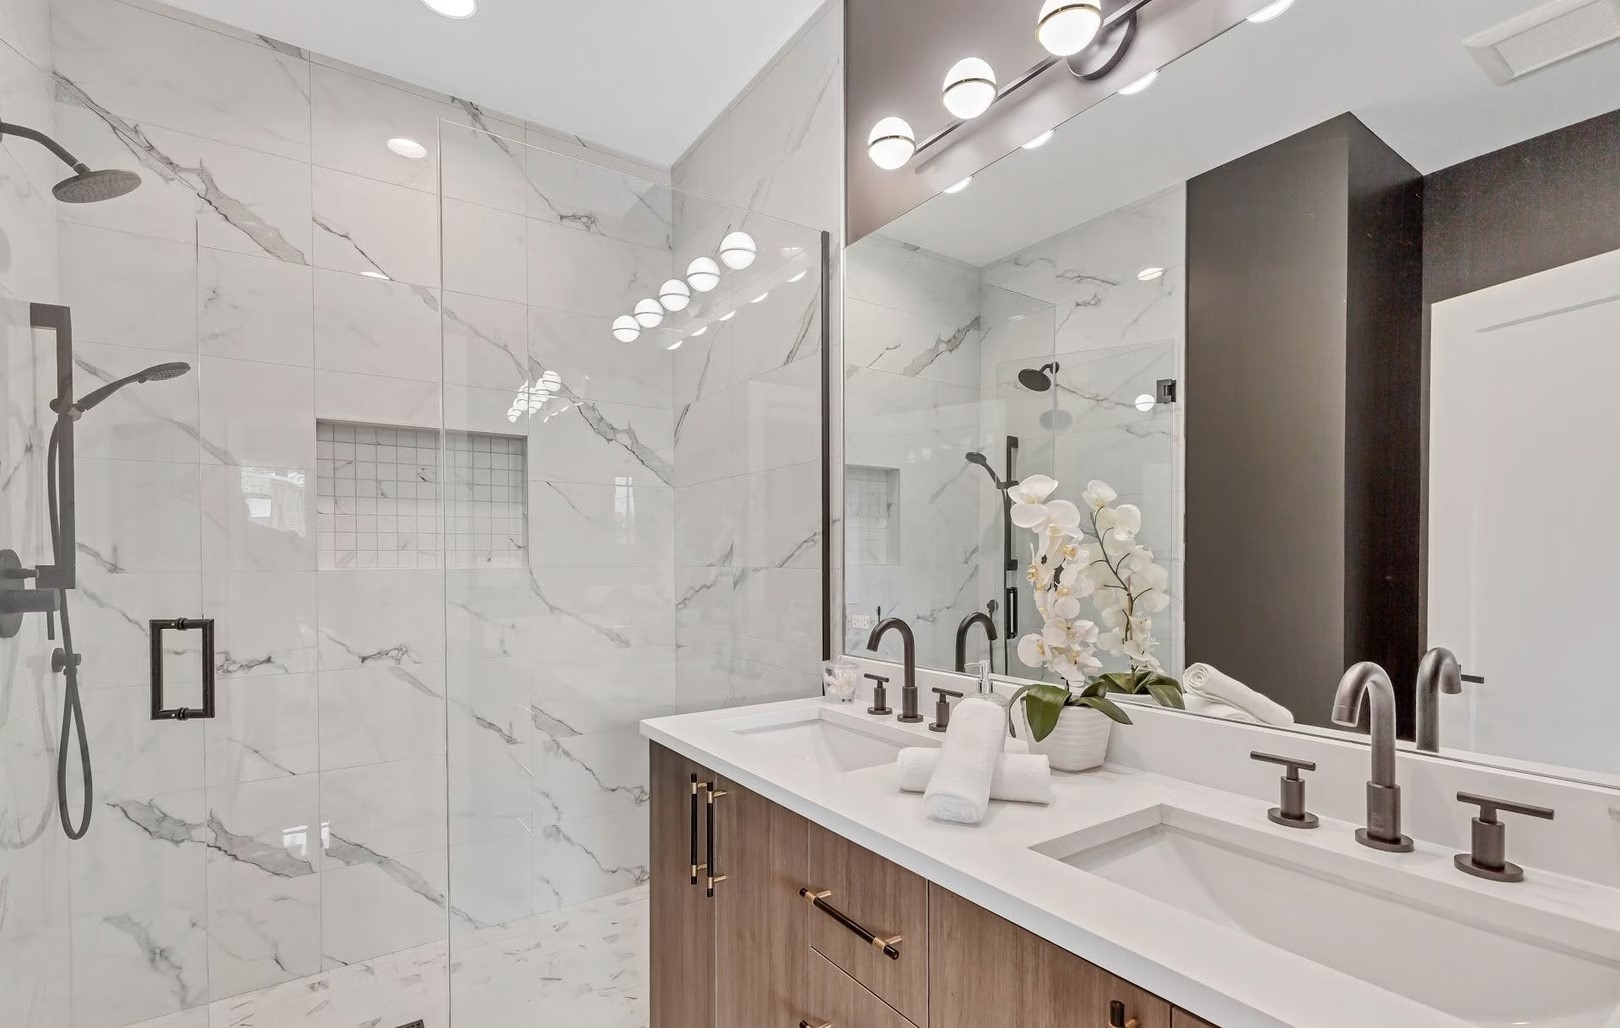 3d-interior-bathroom-design-rendering-Multi-Family-Unit-building-chicago-illinois